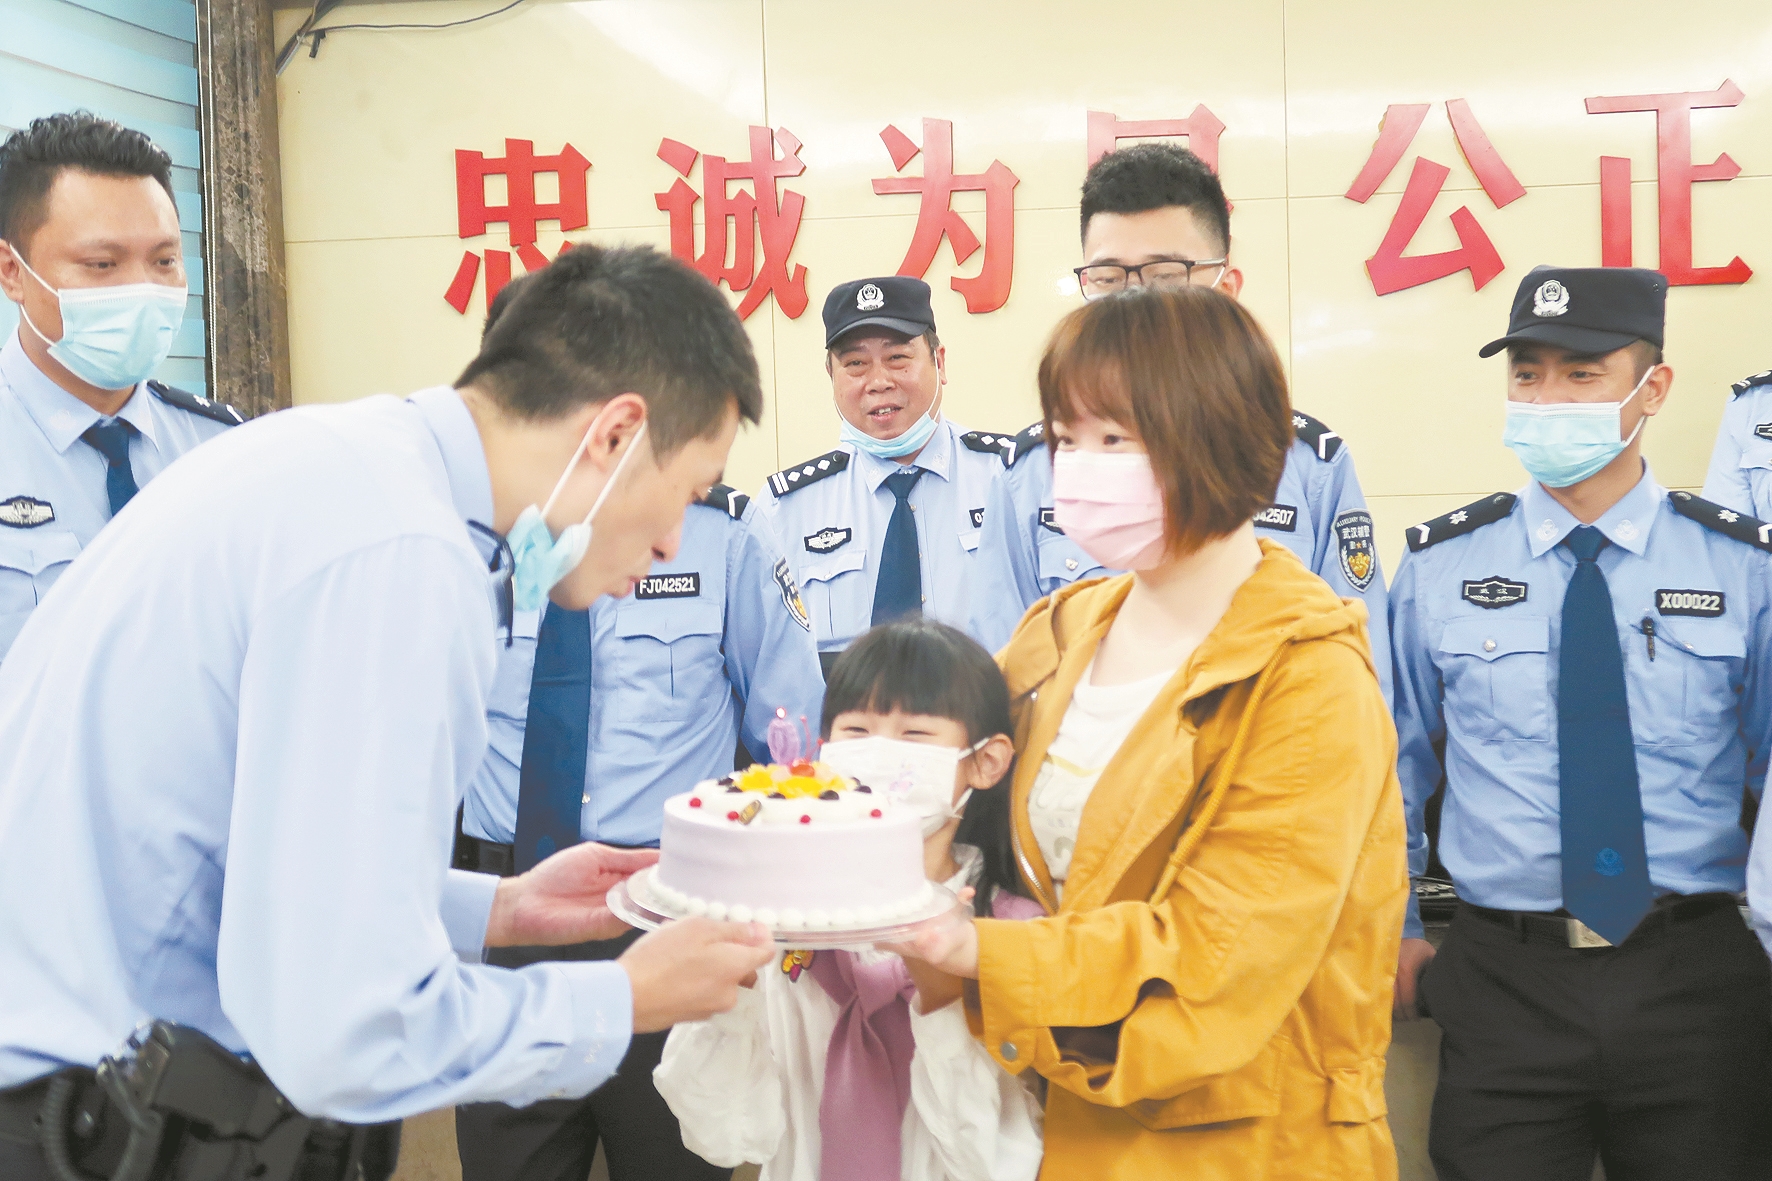 小女孩提着生日蛋糕 想给爸爸一个惊喜 生日快乐歌在警务站响起